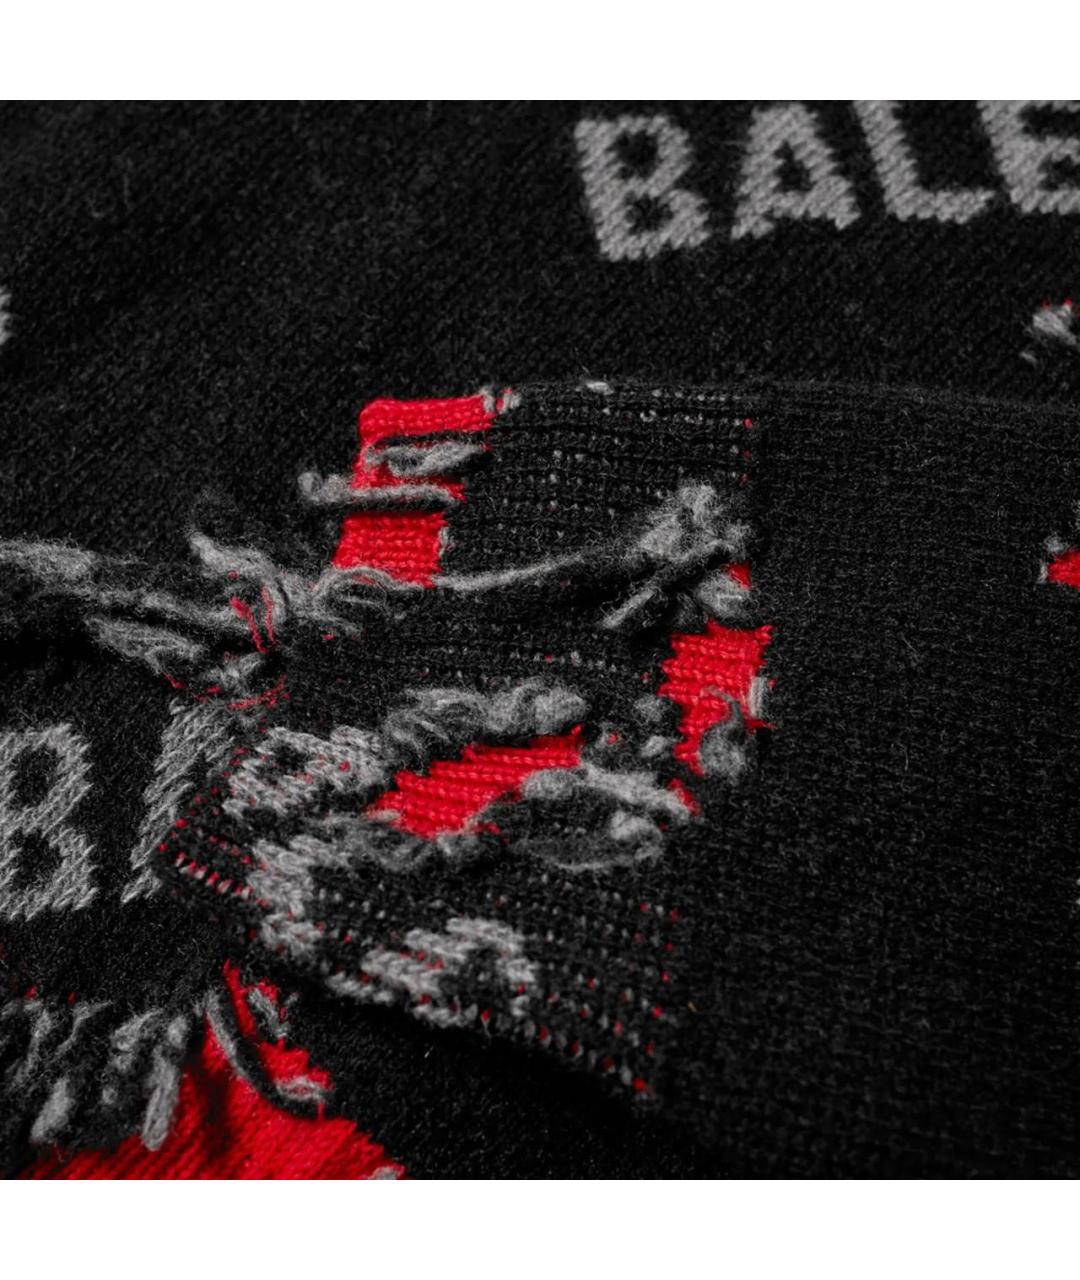 BALENCIAGA Черный хлопковый джемпер / свитер, фото 6